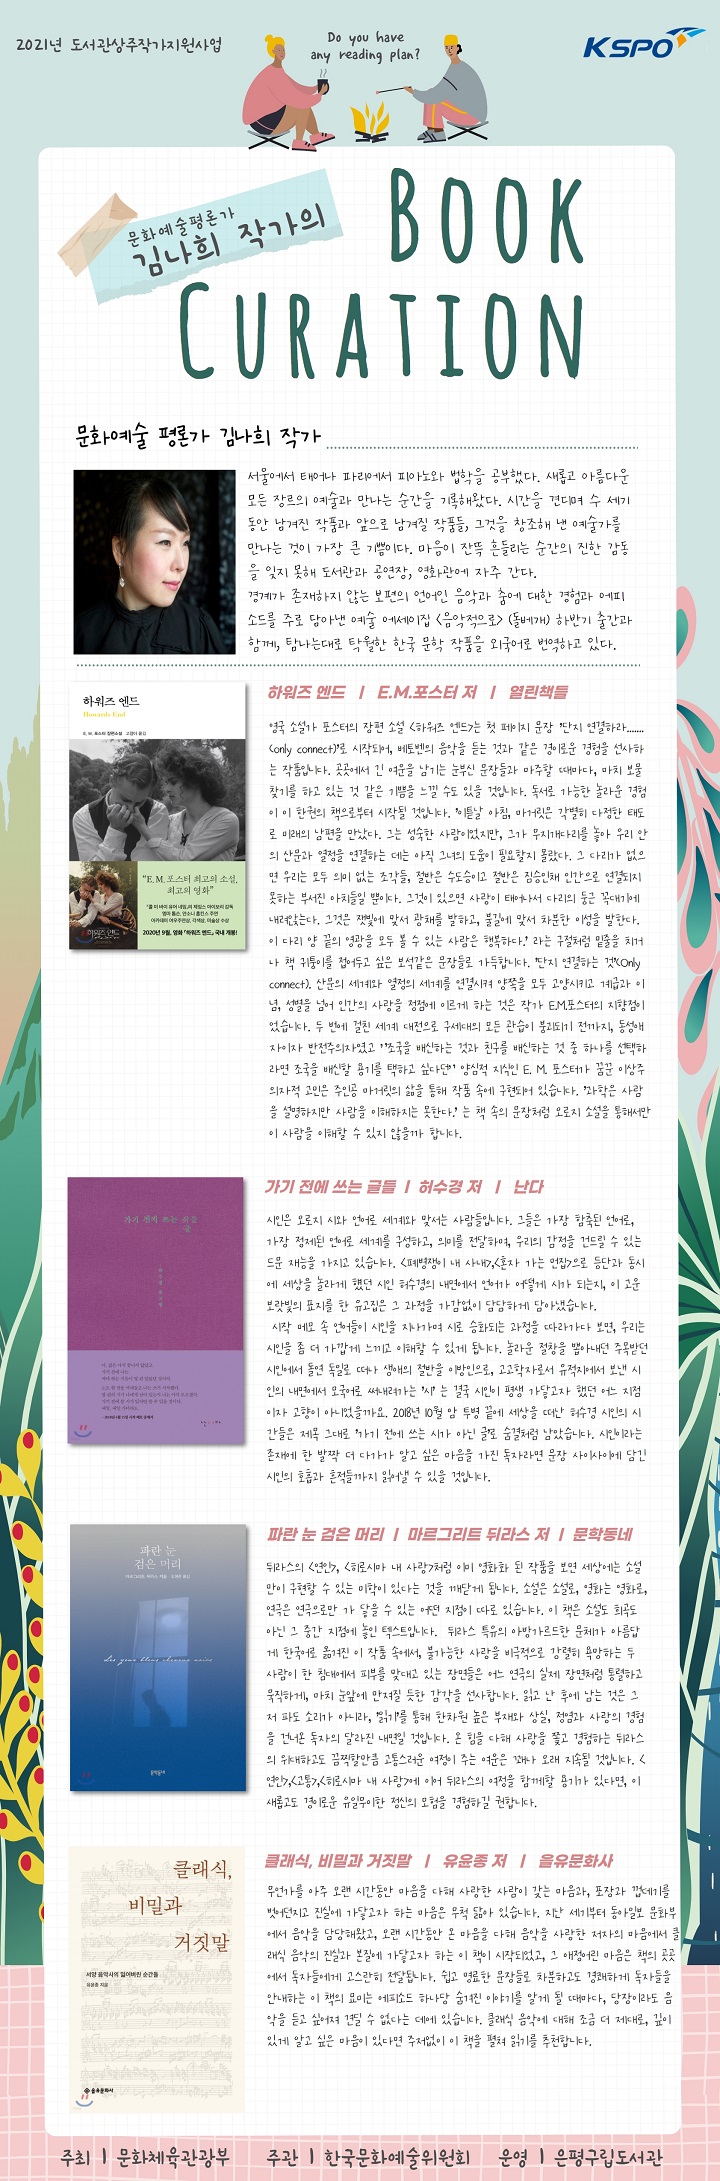 [전시] 김나희 작가의 8월 북큐레이션 이미지